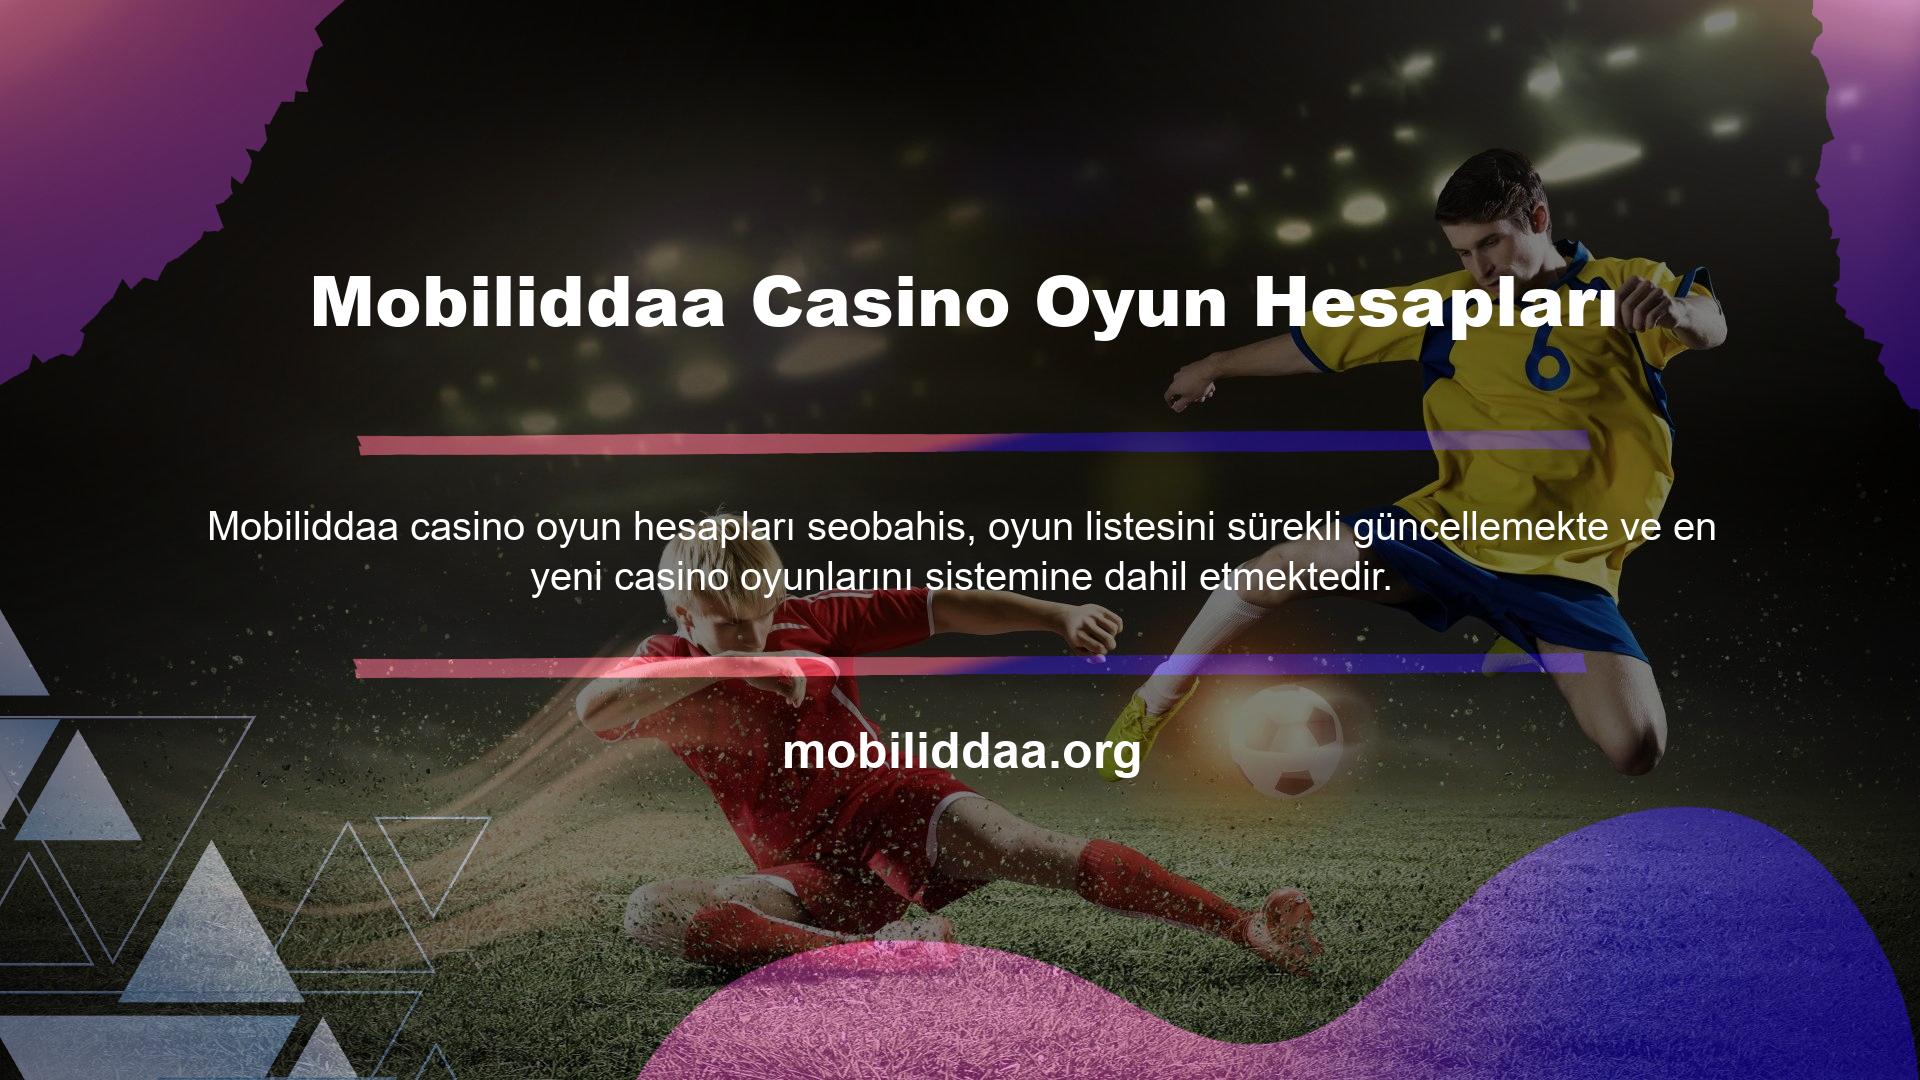 Alışılmış klasik casino oyunlarına ek olarak, benzersiz özelliklere sahip yeni Mobiliddaa Casino Oyun Hesabı Güvenlik Rehberimiz ile heyecan verici slot oyunları da oynayabilir ve kazanabilirsiniz